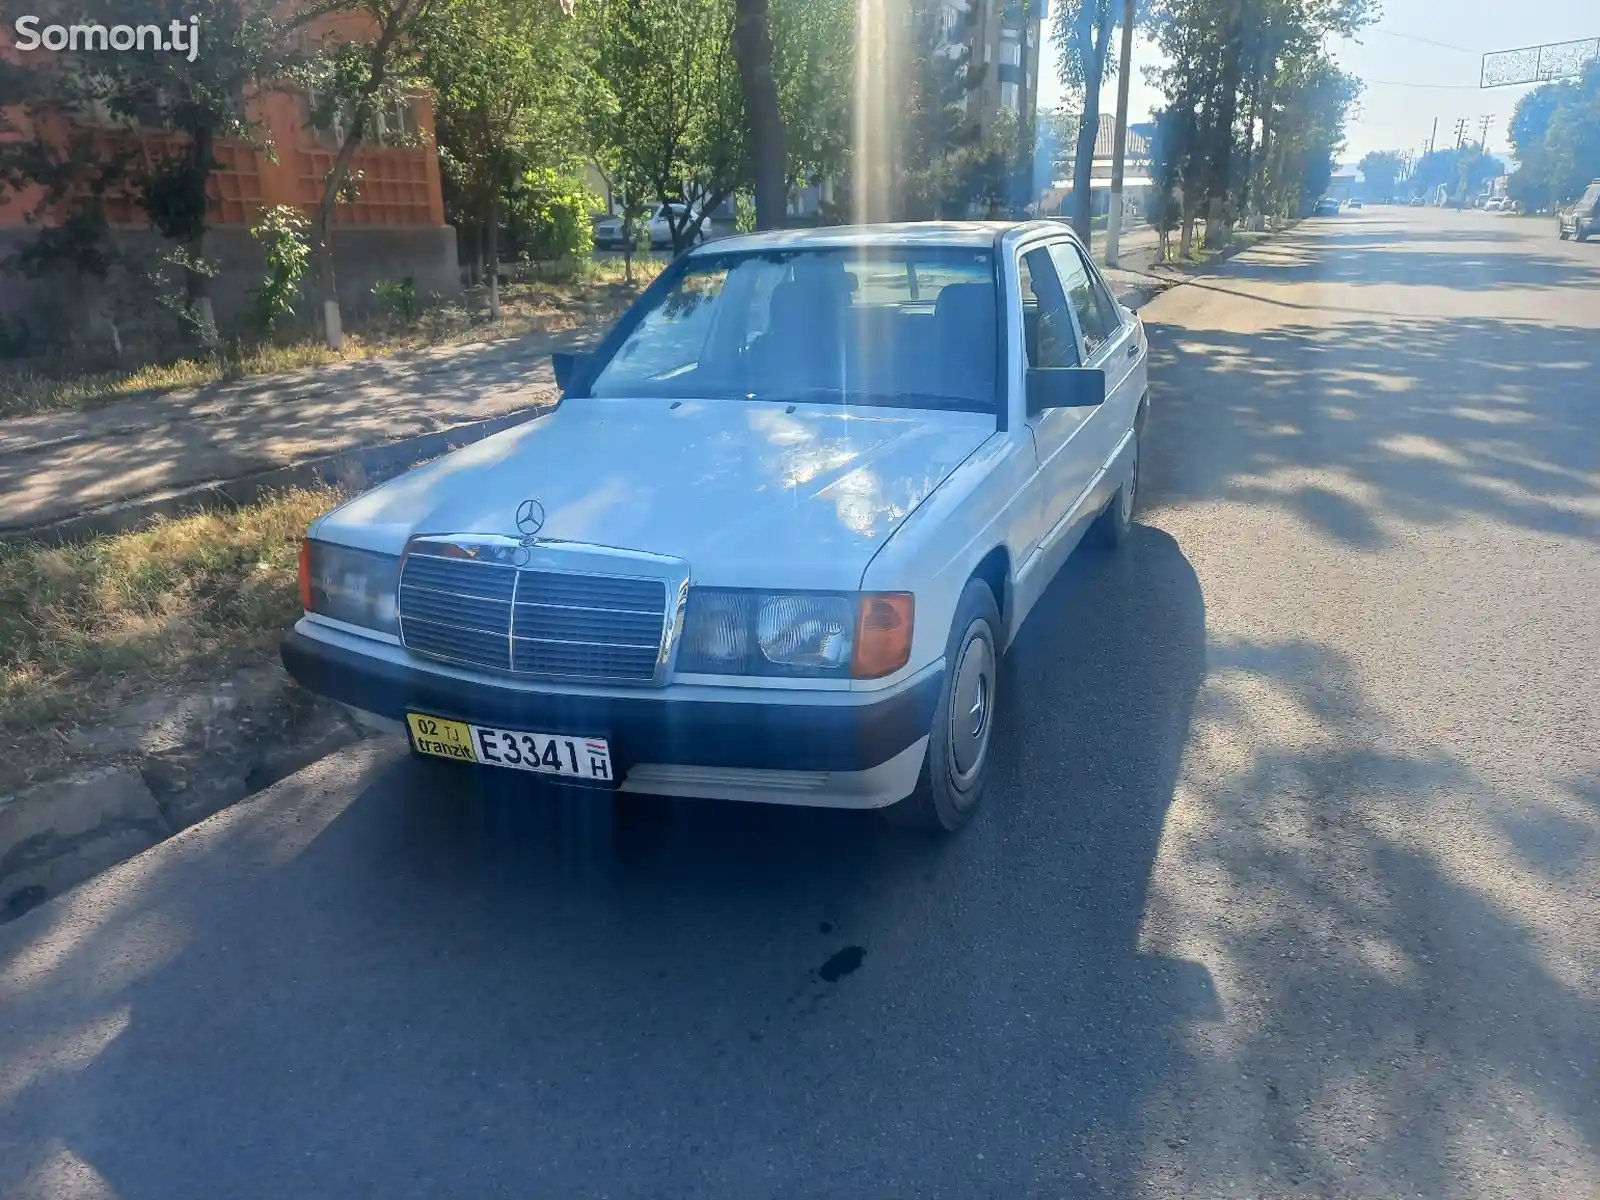 Mercedes-Benz C class, 1990-1